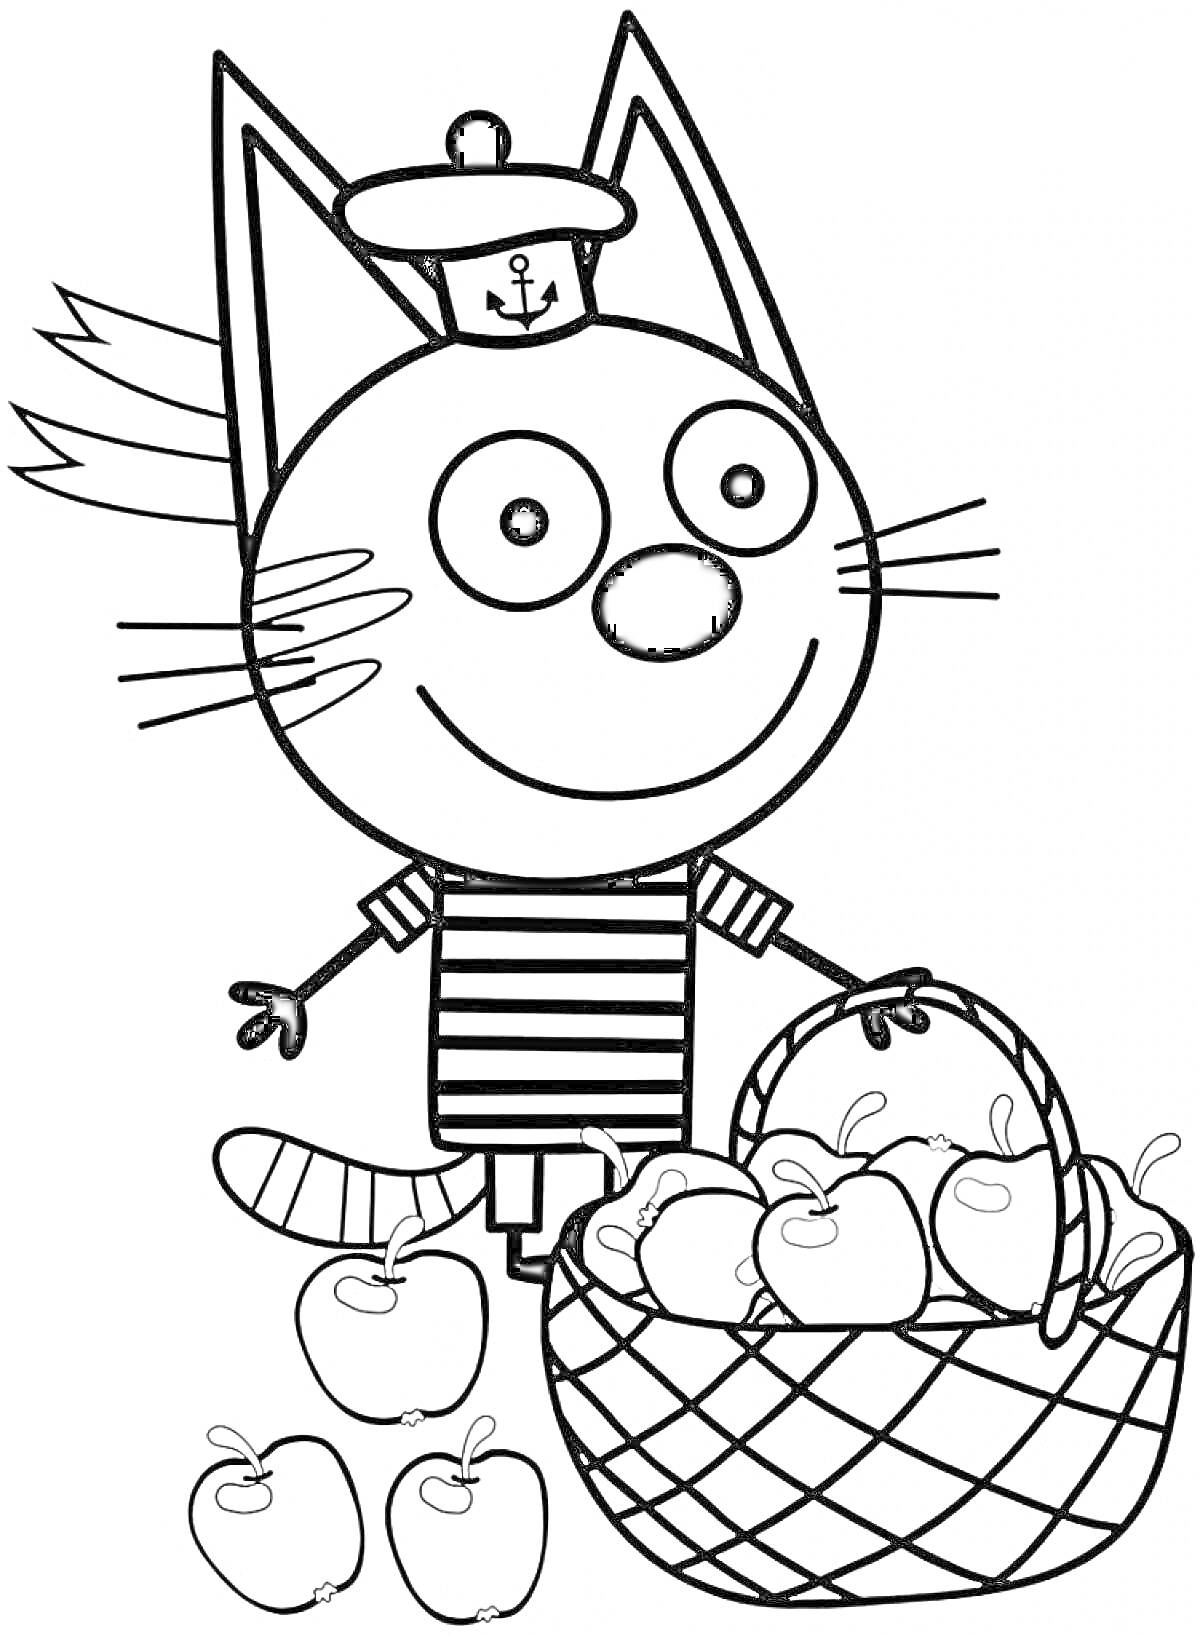 Раскраска Кот в шапке с корзиной яблок